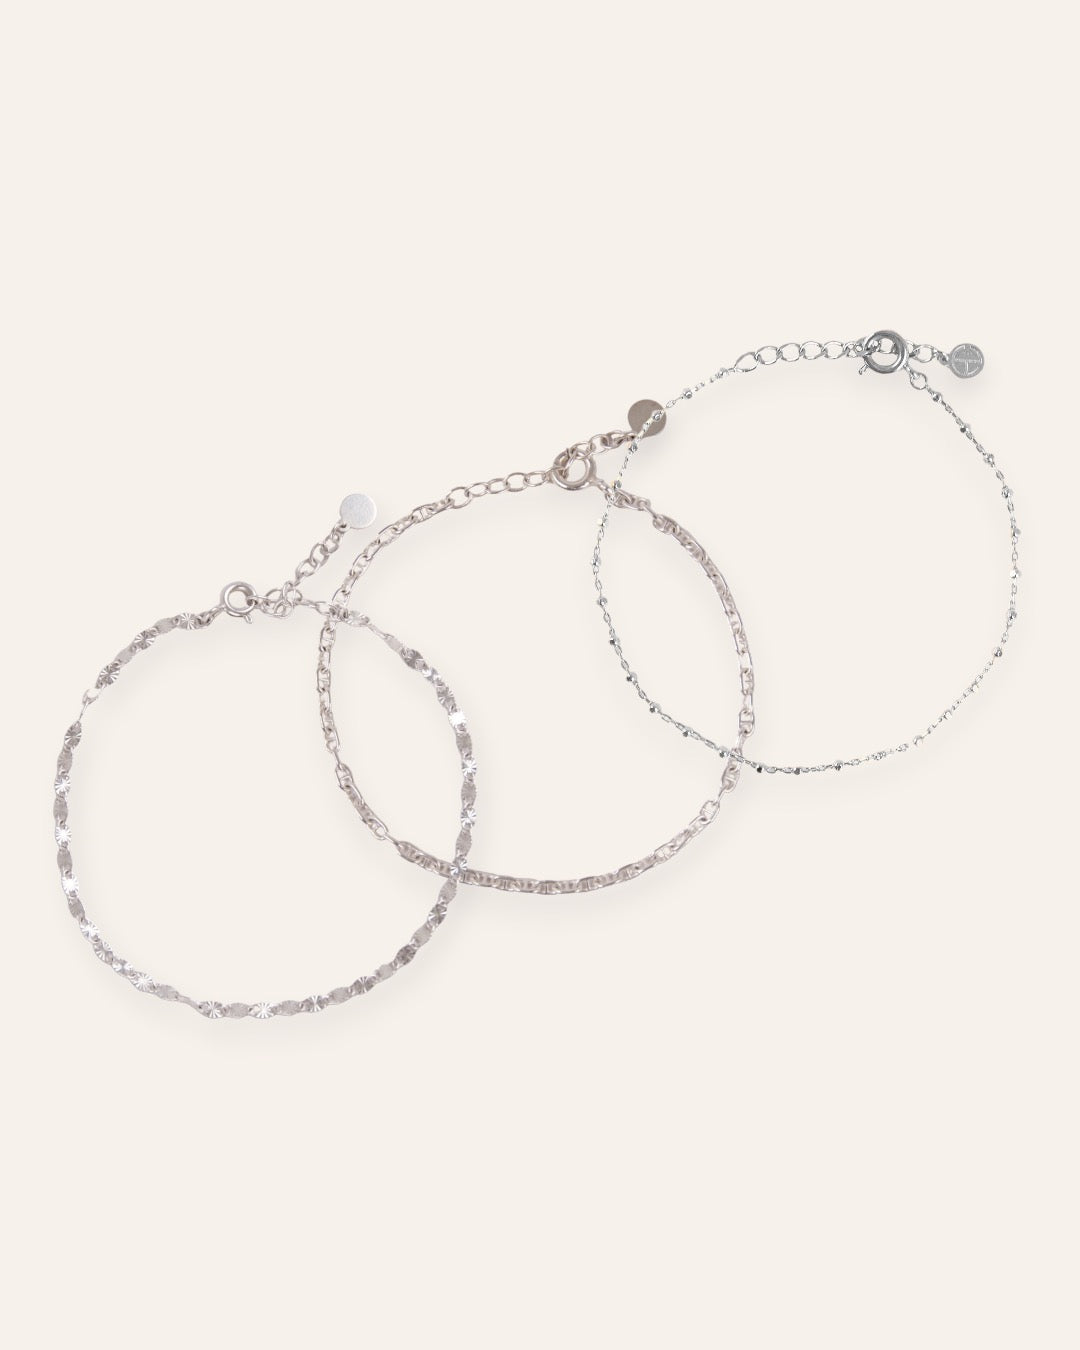 Composition de trois bracelets, avec un bracelet en chaîne avec des mailles soleil striées, un bracelet en chaîne marine, et un bracelet en chaîne fine avec des petites mailles carrées en argent massif 925.